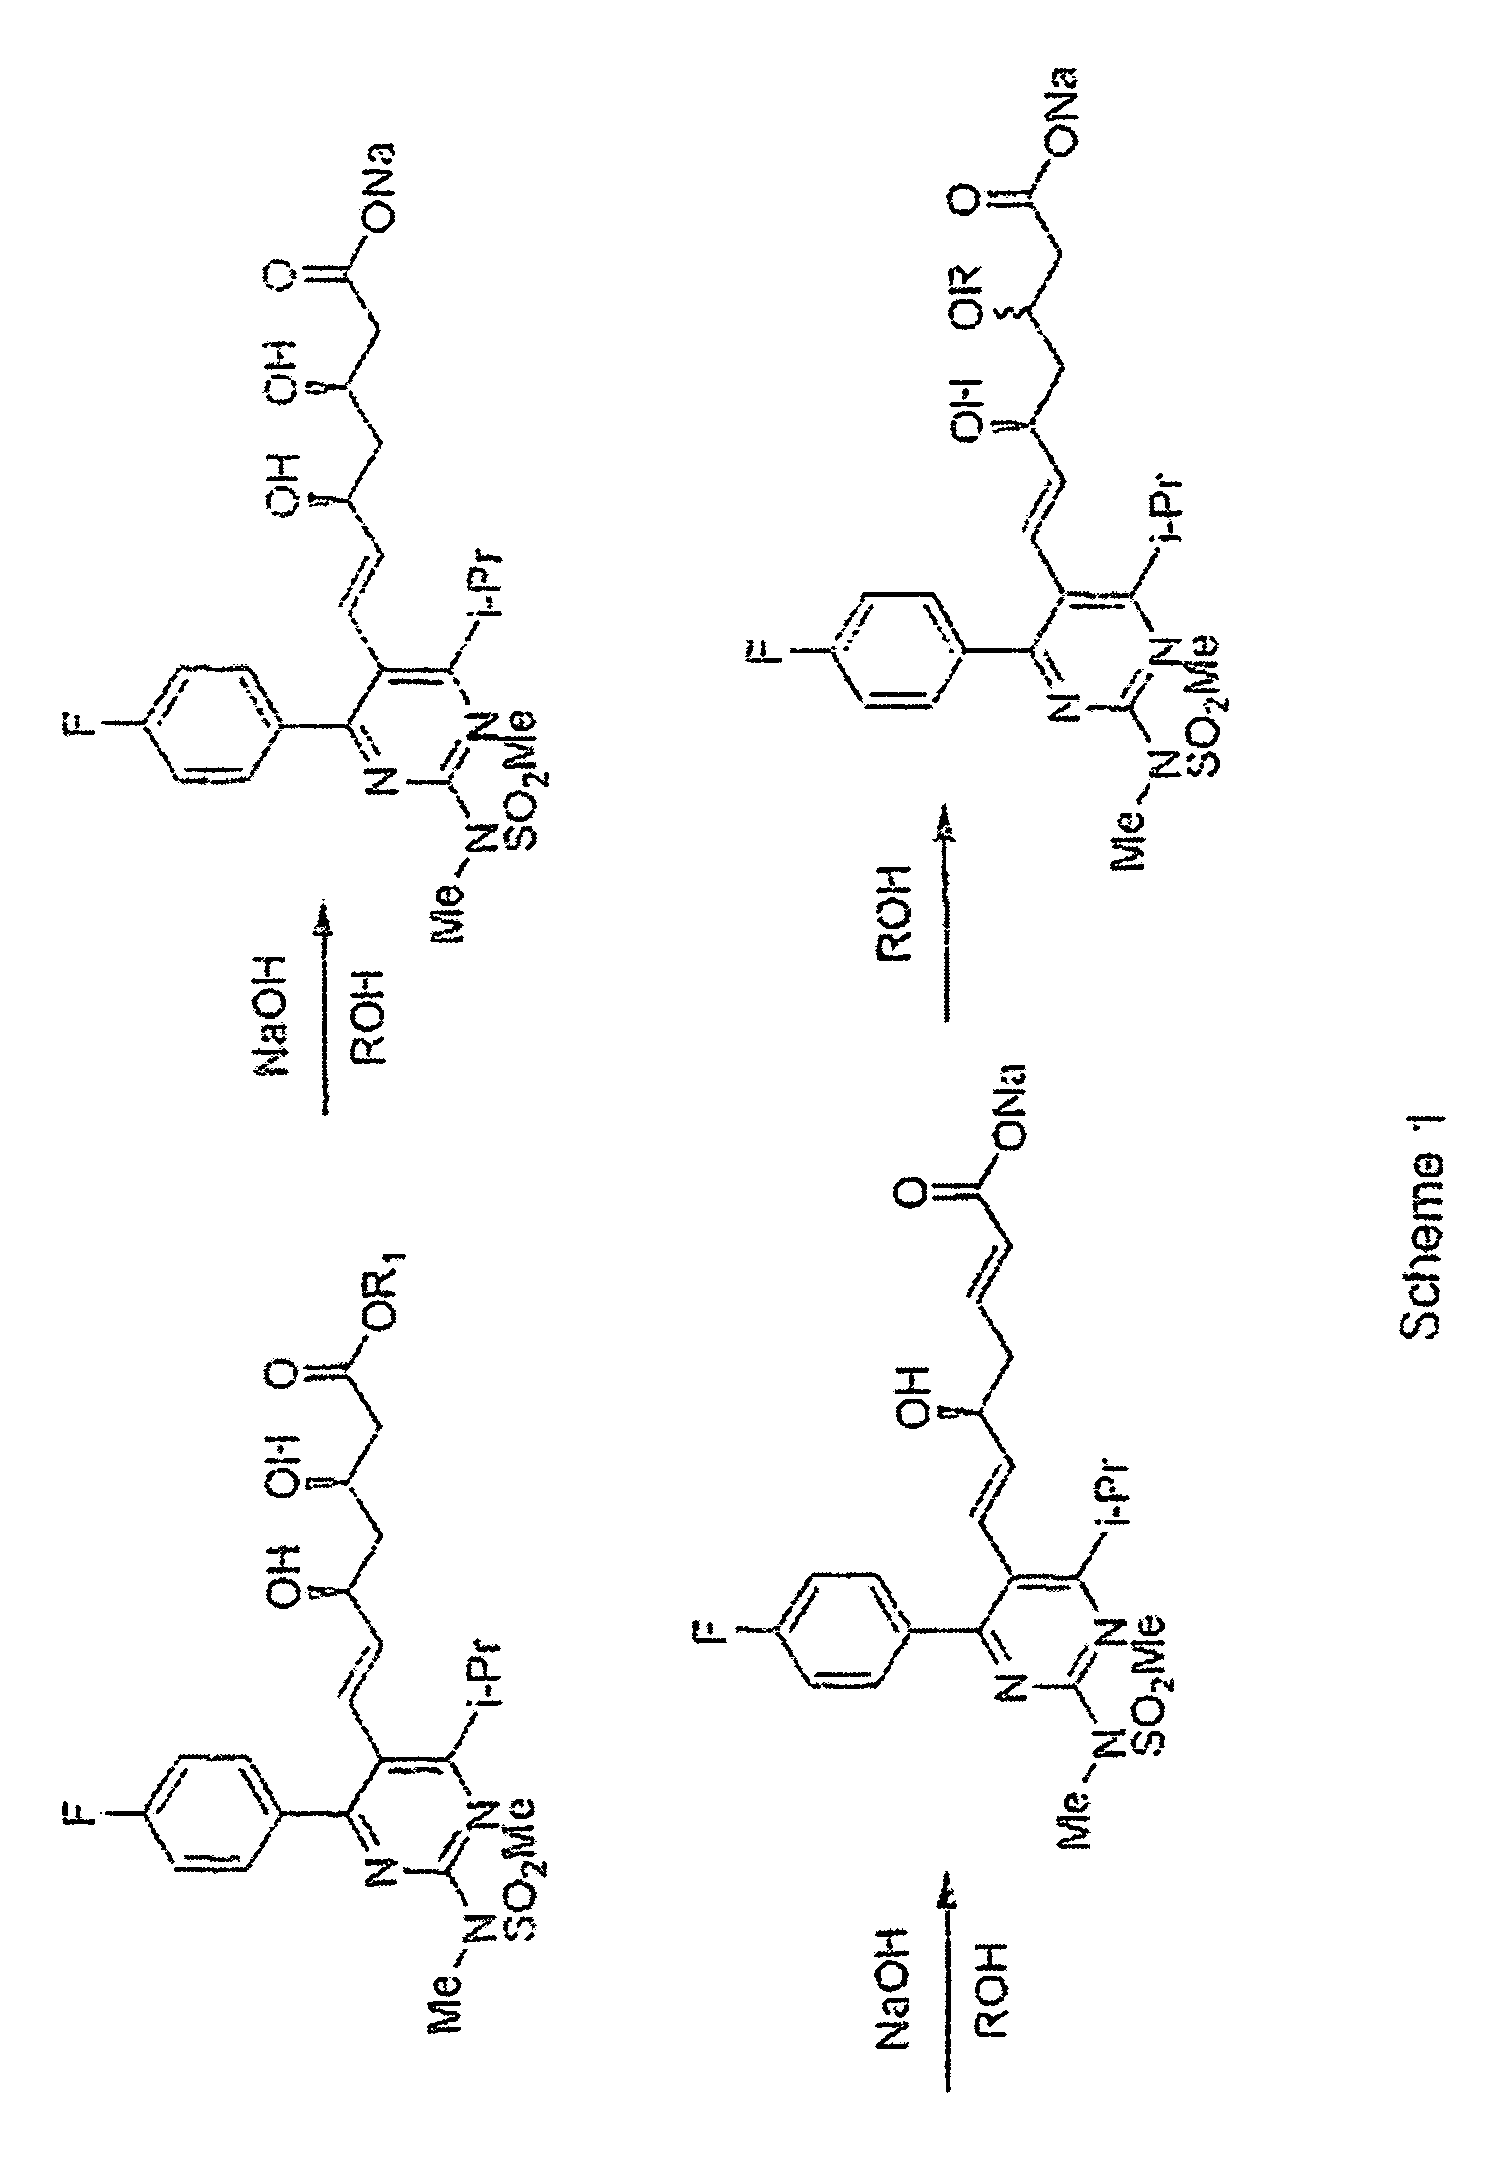 Process for Preparing Amorphous Rosuvastatin Calcium of Impurities